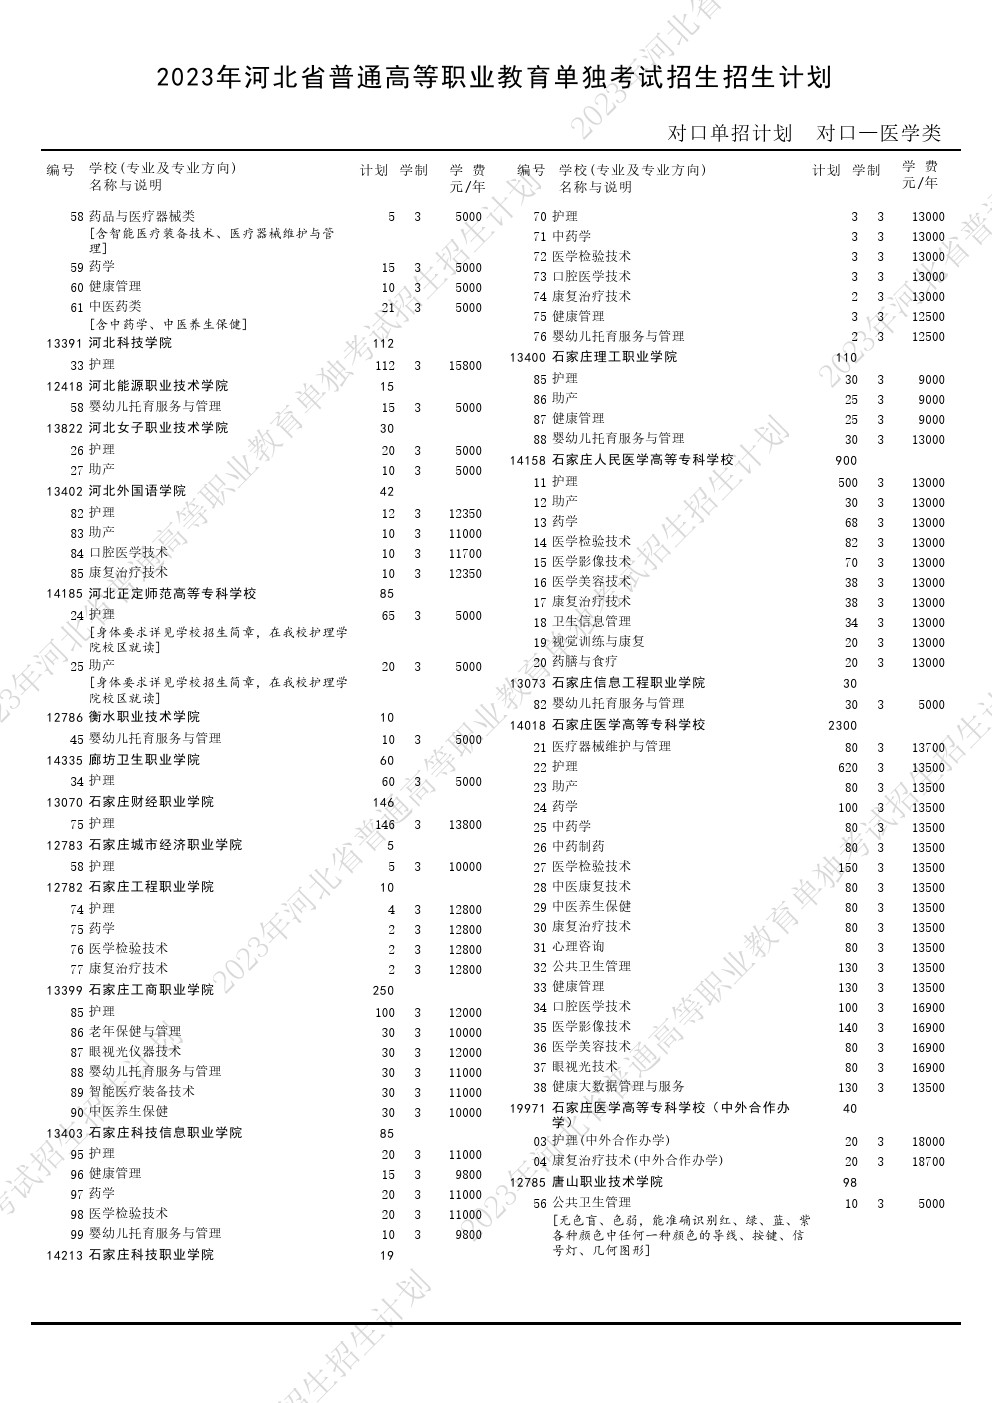 2023年河北省高职单招考试对口医学类招生计划